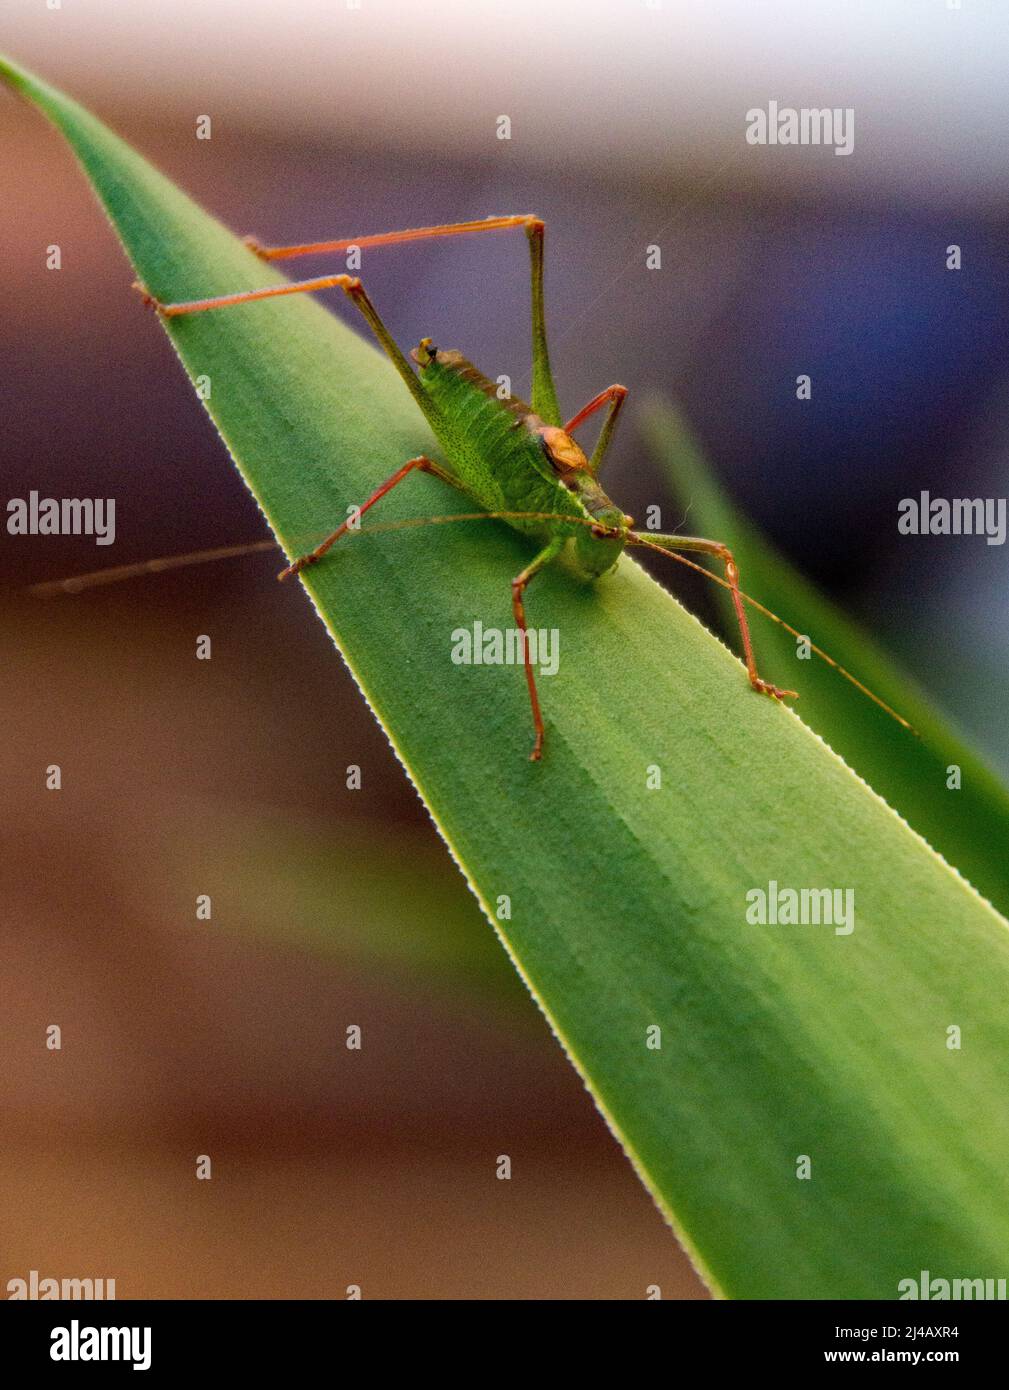 Un grasshopper commun encore sur la feuille d'une plante Yucca, antenne dehors prête pour les prédateurs, tout en se réchauffant au soleil. Banque D'Images